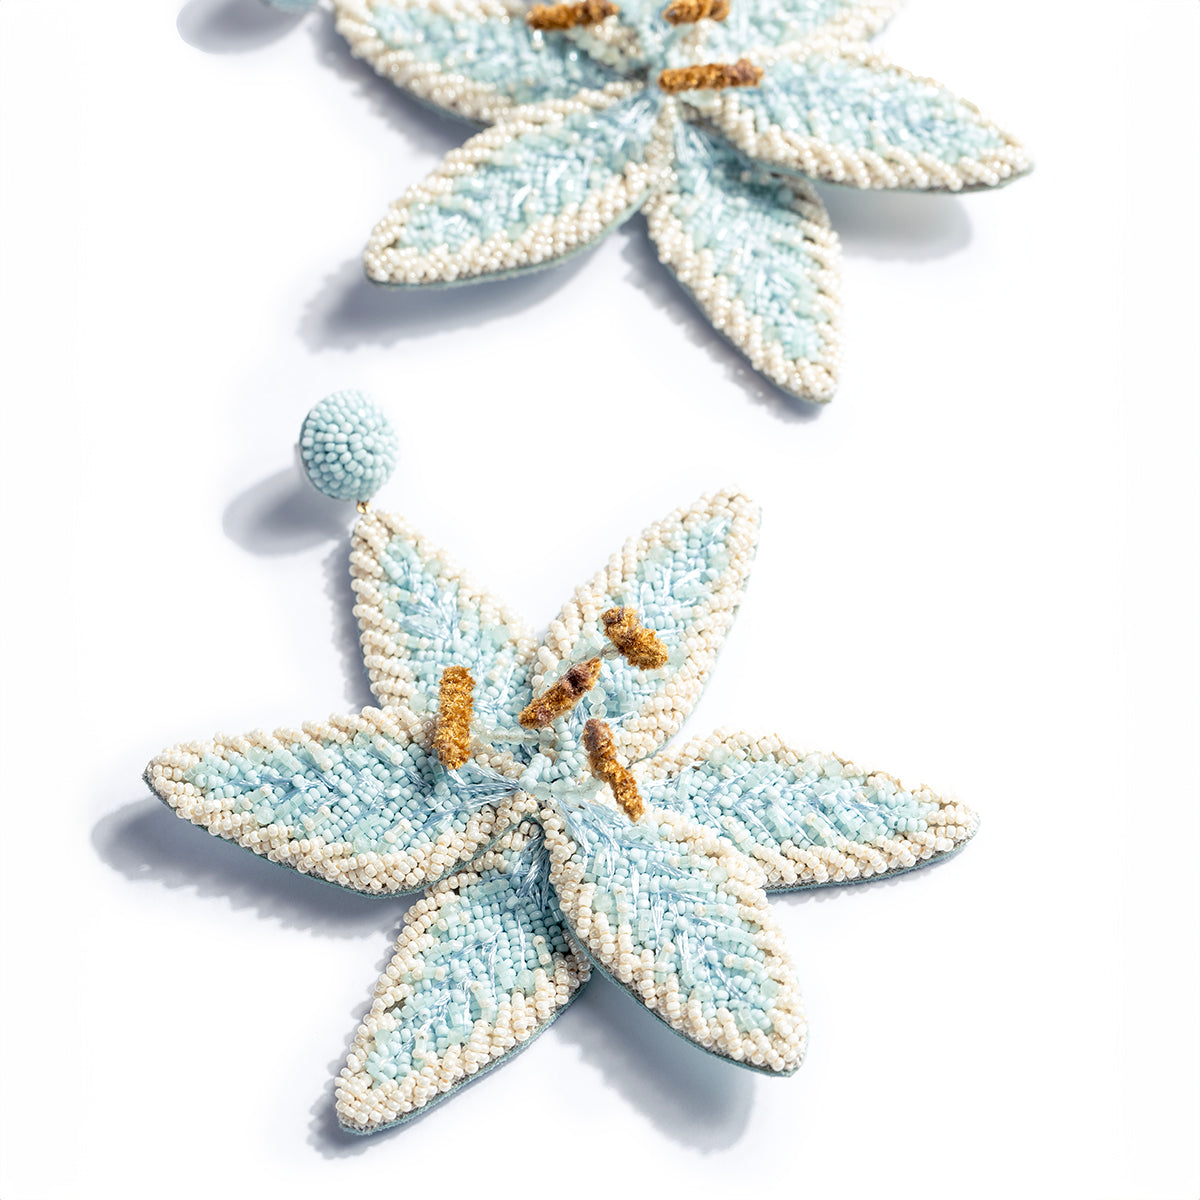 Deepa Gurnani handmade the Palesa earrings in baby blue color